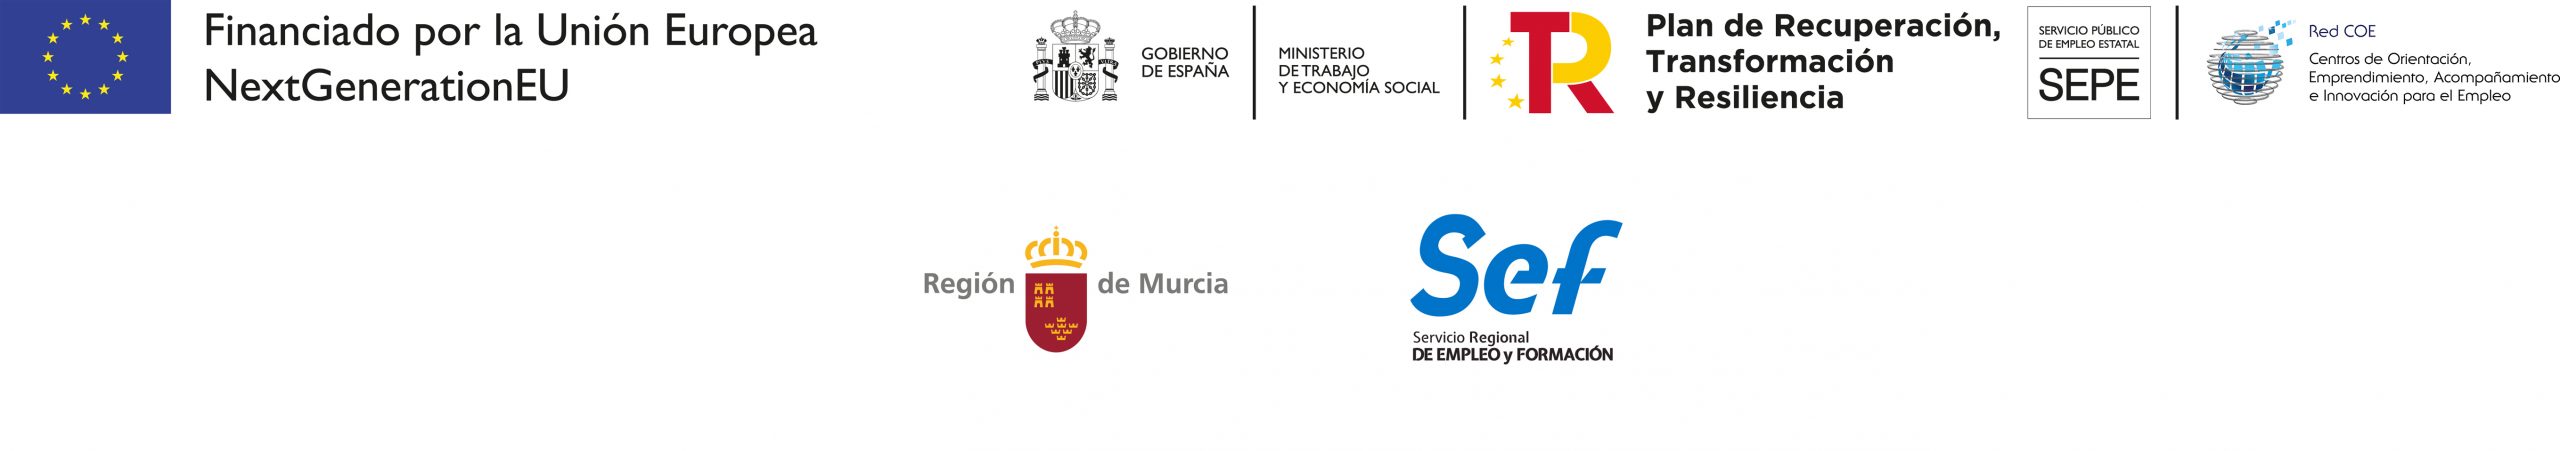 logos oficiales de instituciones